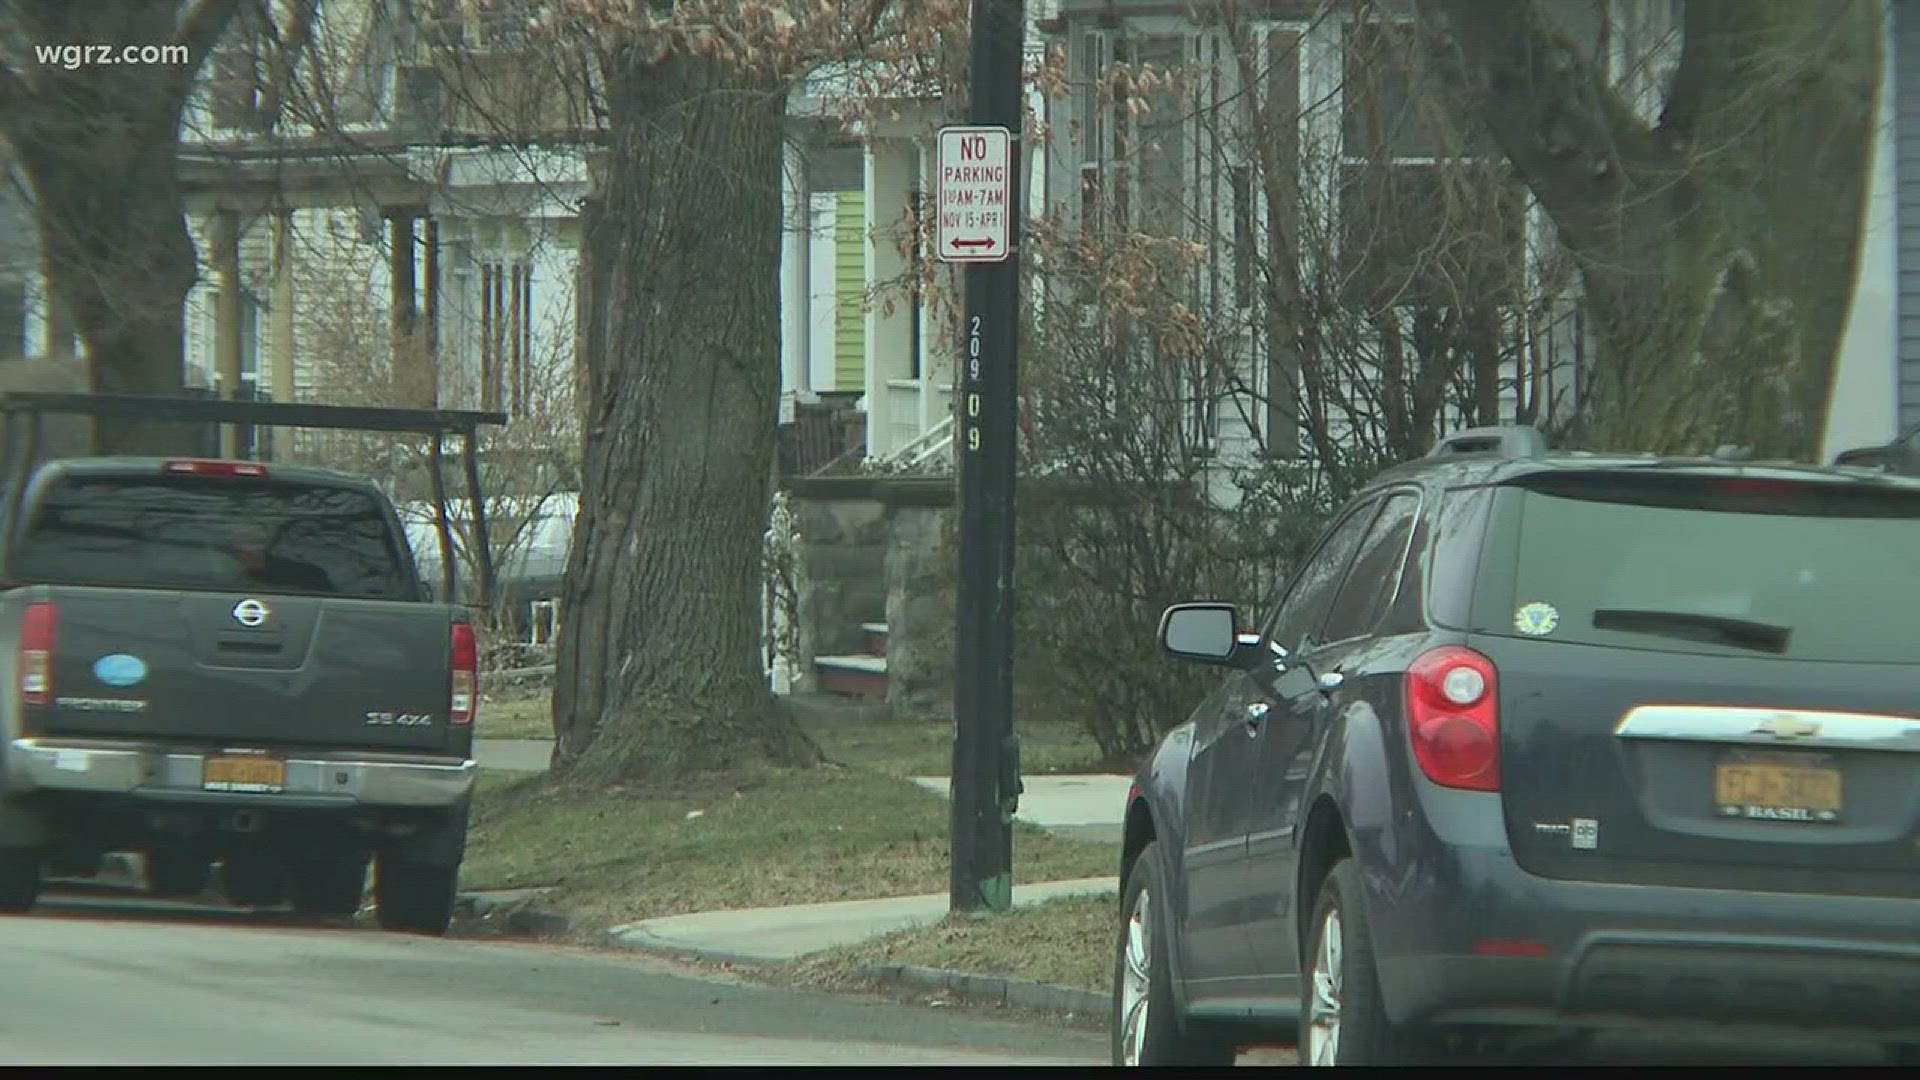 Winter Parking Bans Begin Around WNY